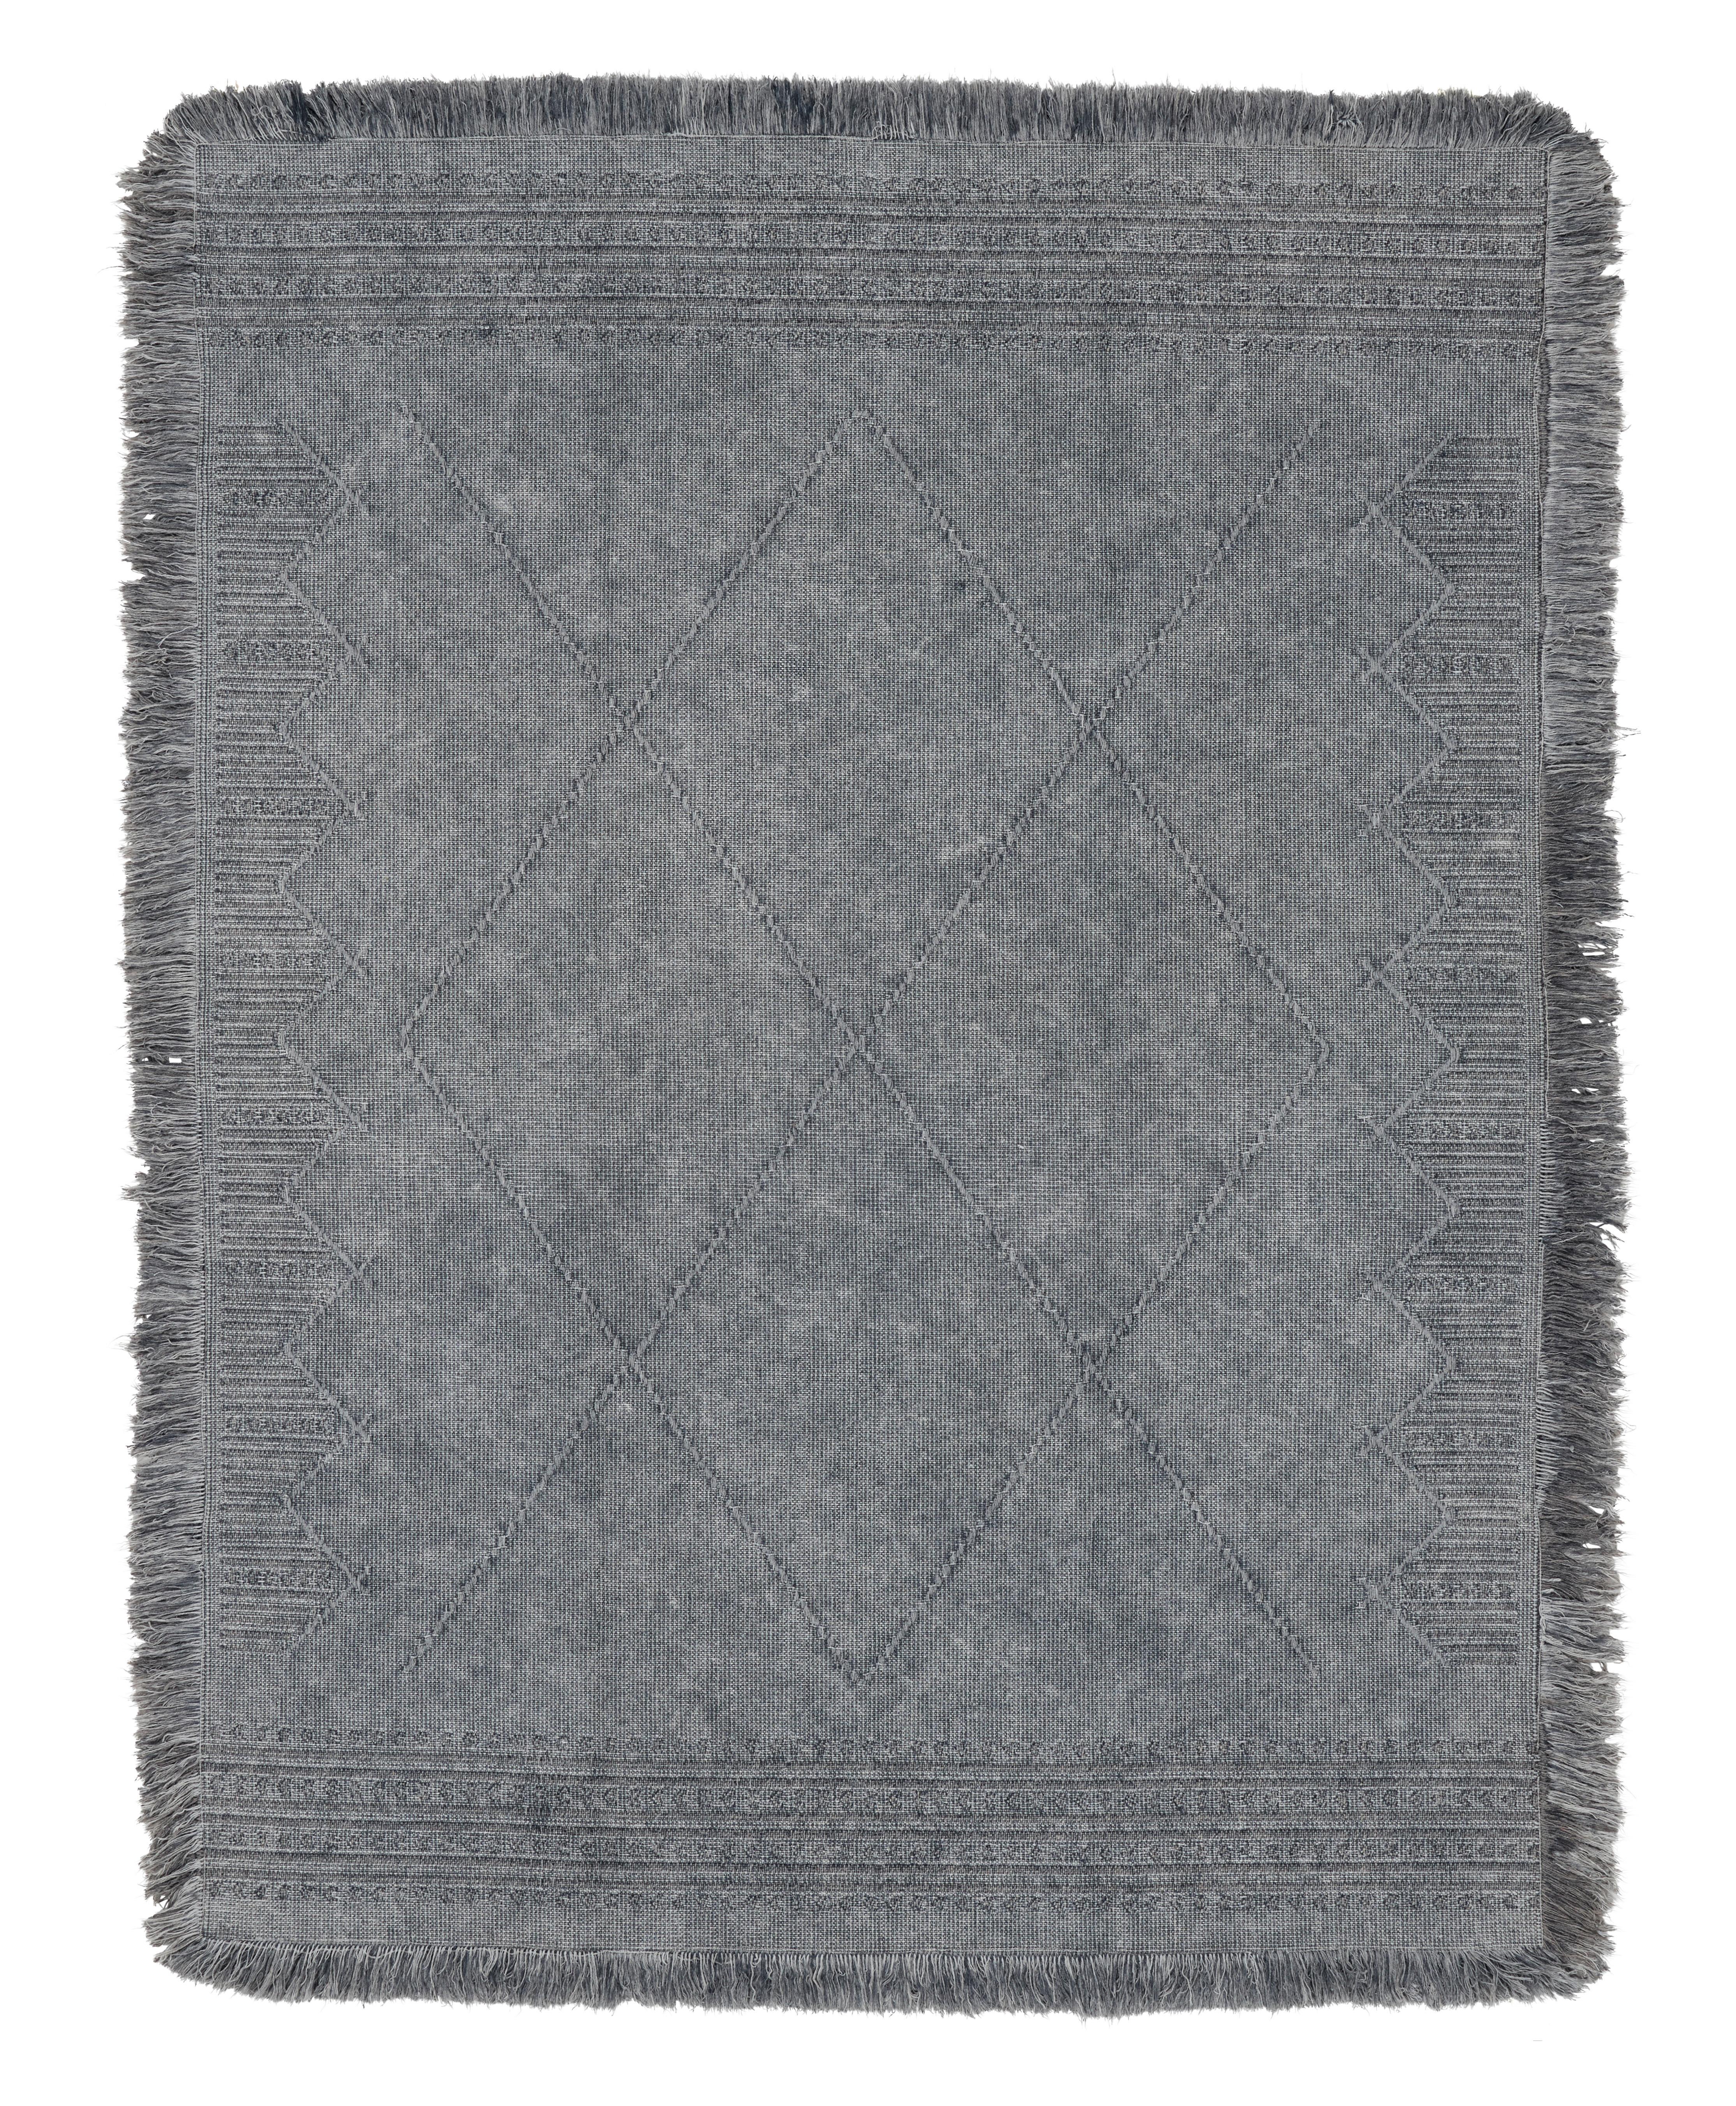 Ručne Tkaný Koberec Monaco 3, 160/230cm, Sivá - sivá, textil (160/230cm) - Modern Living